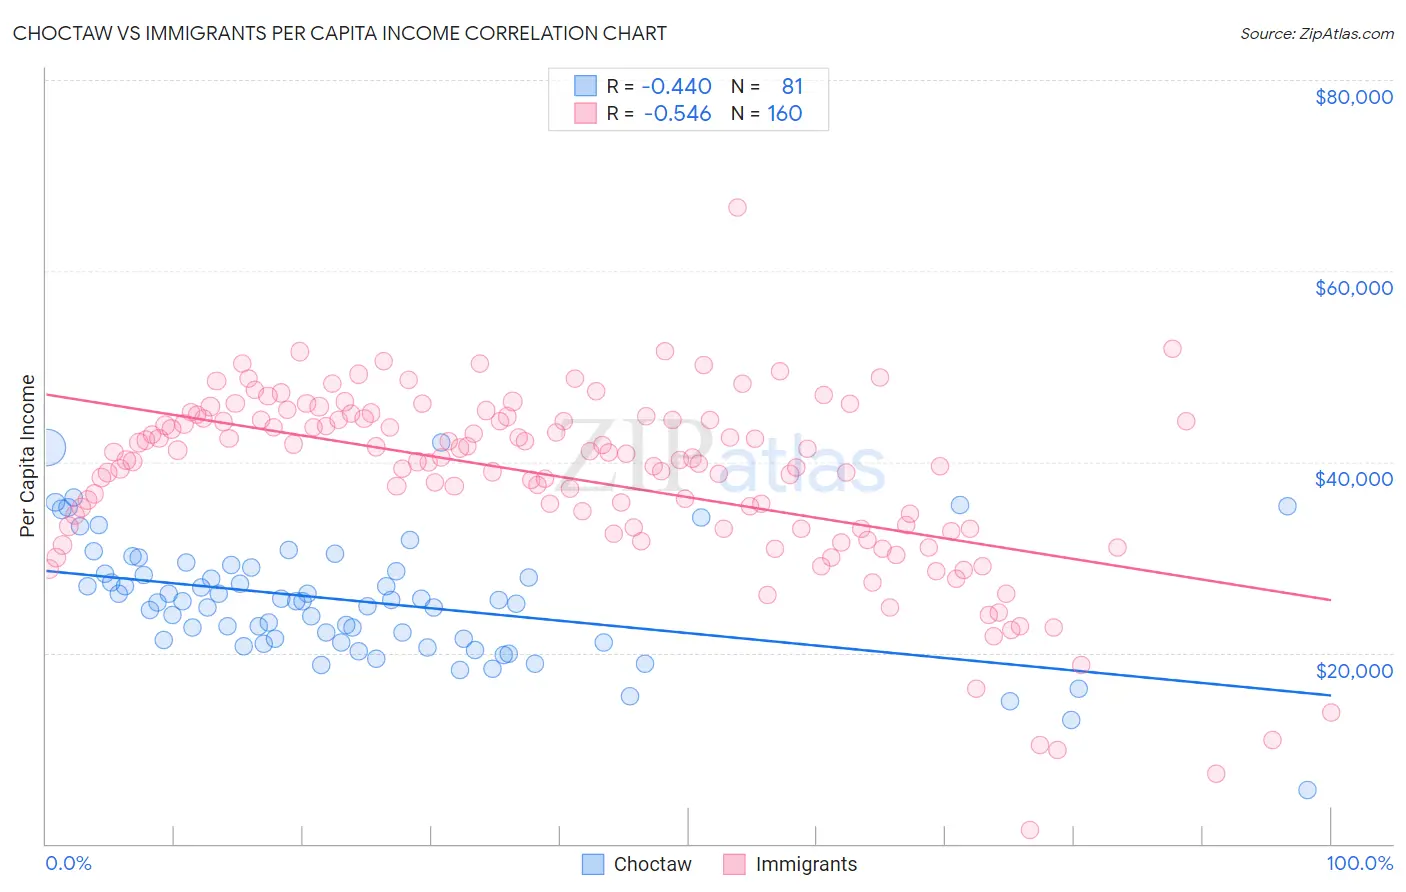 Choctaw vs Immigrants Per Capita Income